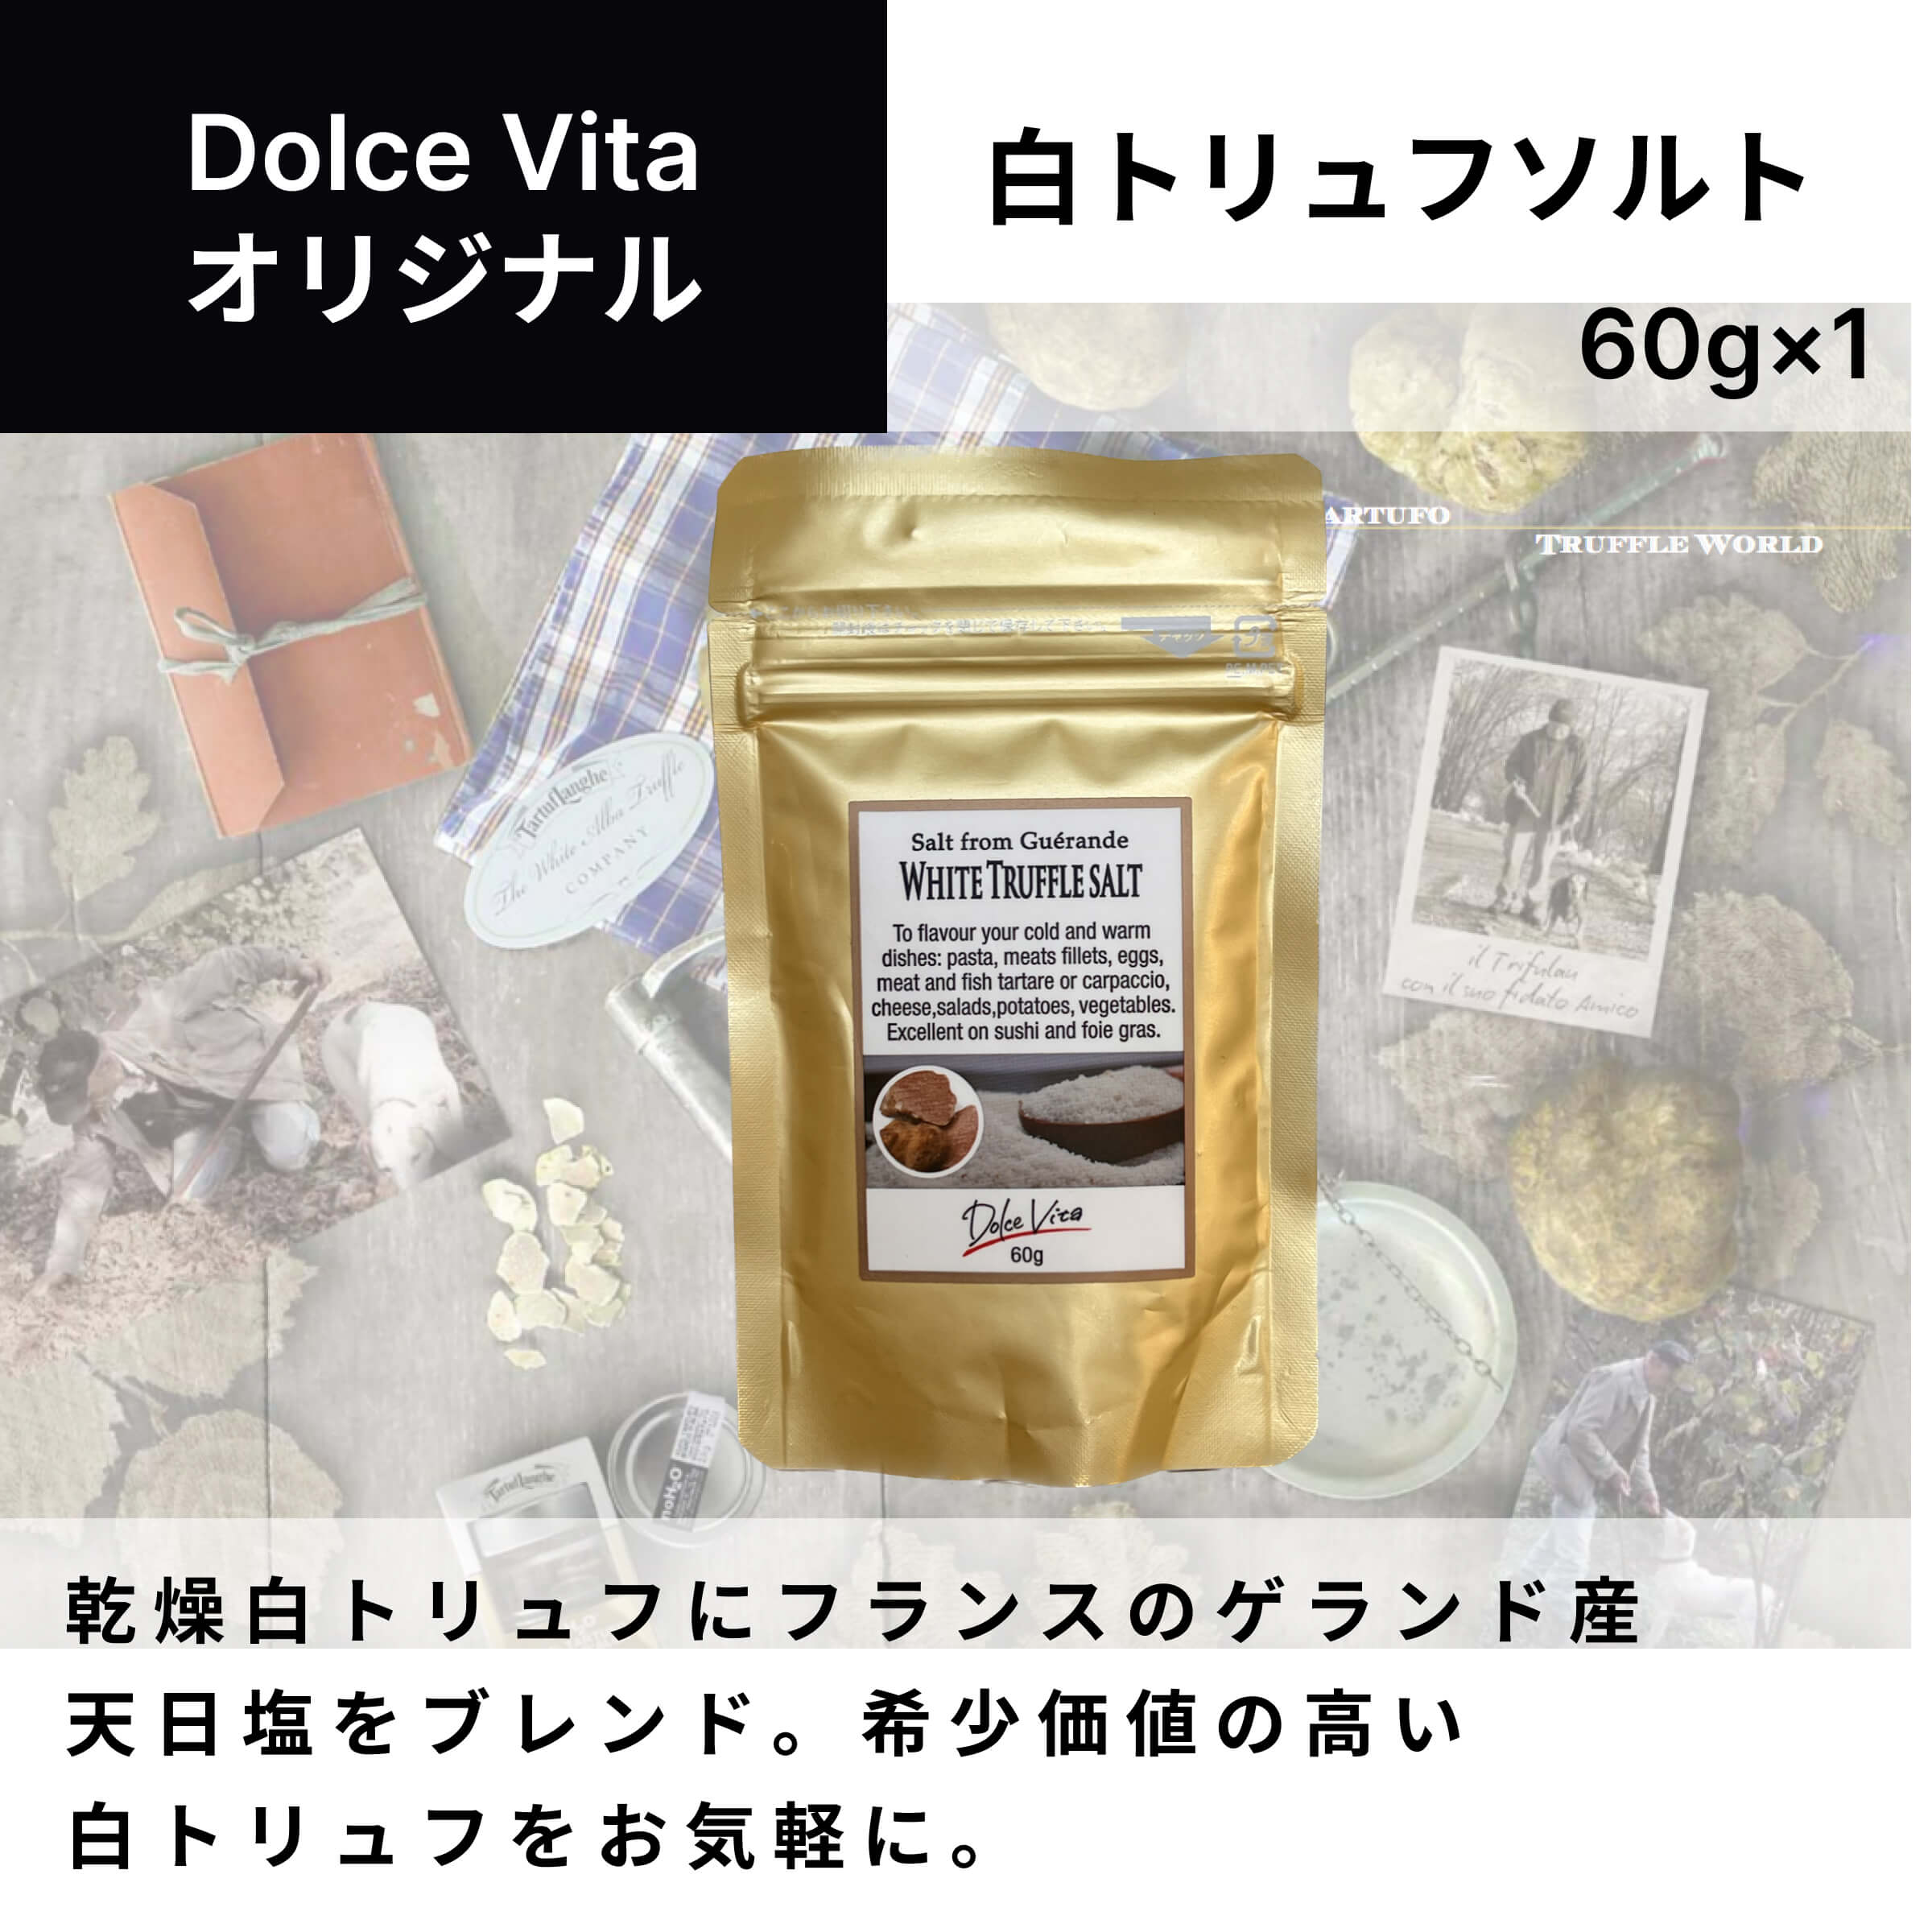 白トリュフソルト 60g×1個 ジャパンソルト（Japan Salt）ドルチェヴィータ (Dolce Vita) トリュフ塩 トリフ塩 トリフ トリュフ料理 イタリア料理 イタリア食材 大容量 ジップ付きスタンドパウチ イタリア 母の日